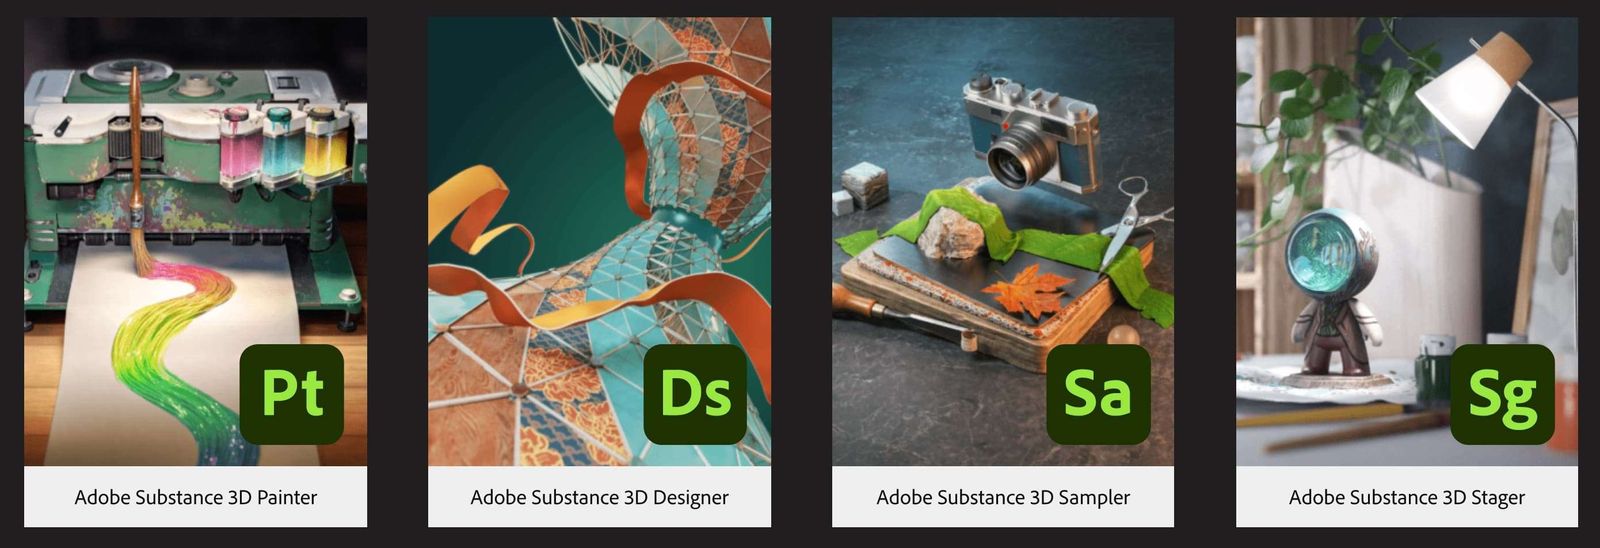 Adobe Substance 3D Sampler 4.1.2.3298 for windows instal free